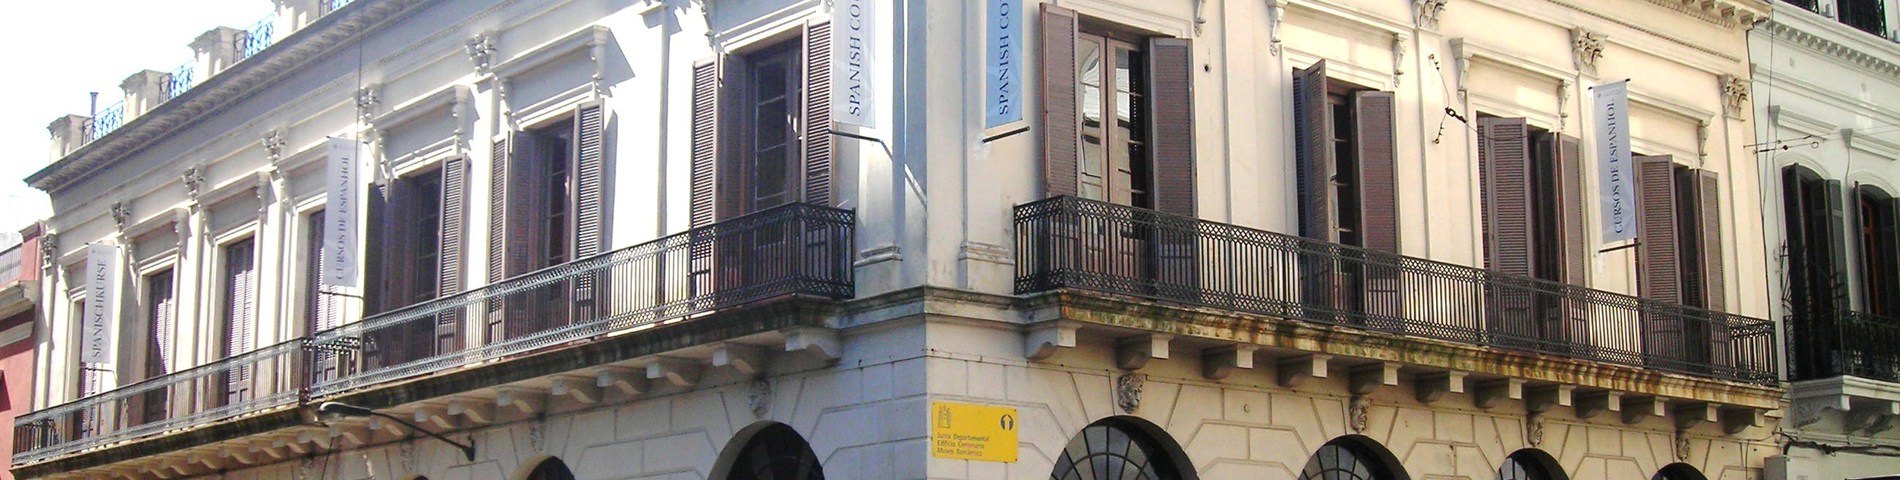 Academia Uruguay画像1